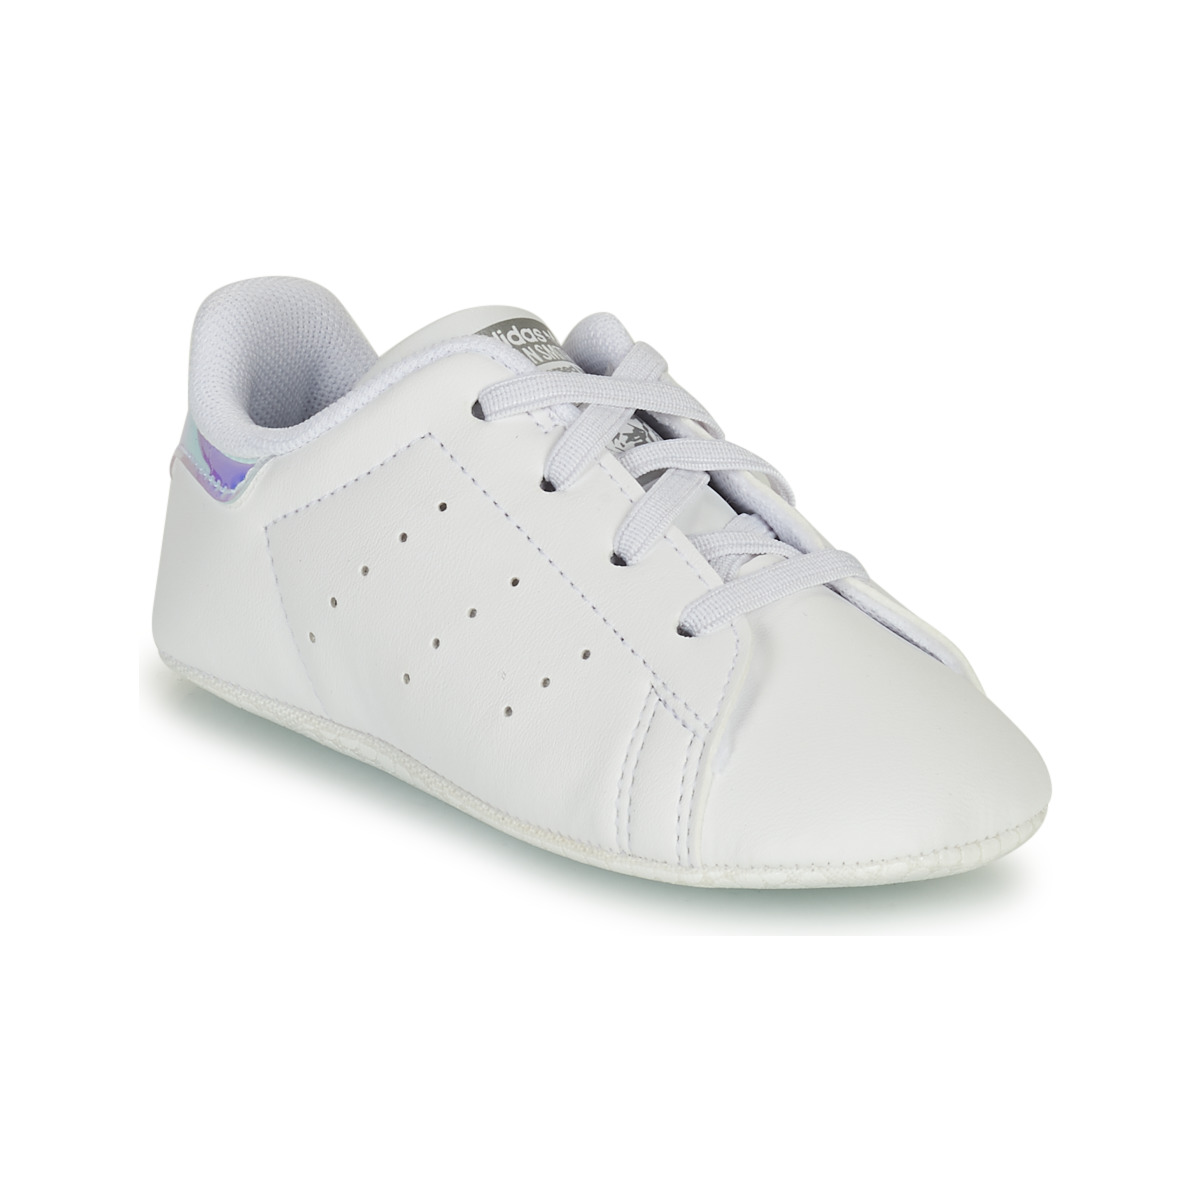 Schuhe Mädchen Sneaker Low adidas Originals STAN SMITH CRIB SUSTAINABLE Weiß / Silber